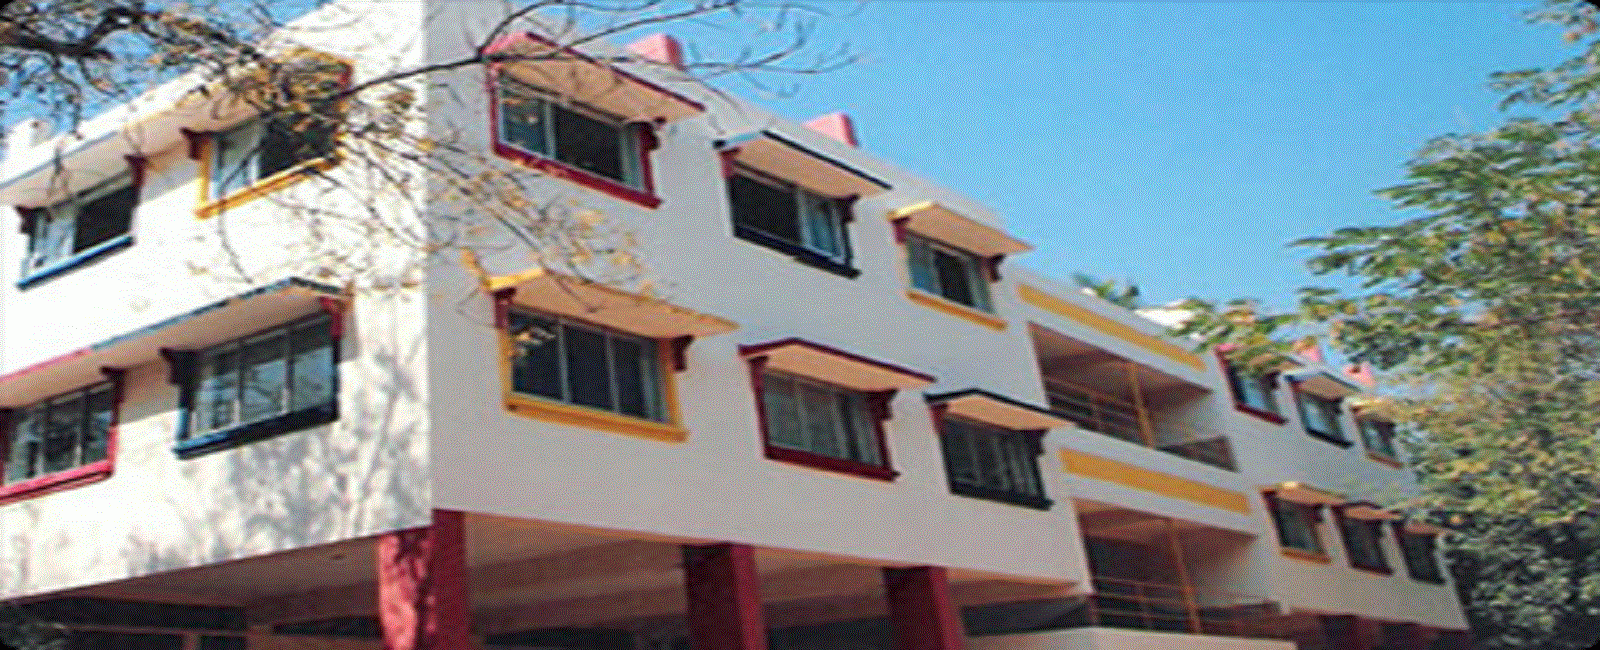 One of the Top Schools in Hyderabad - Chaitanya Vidyalaya